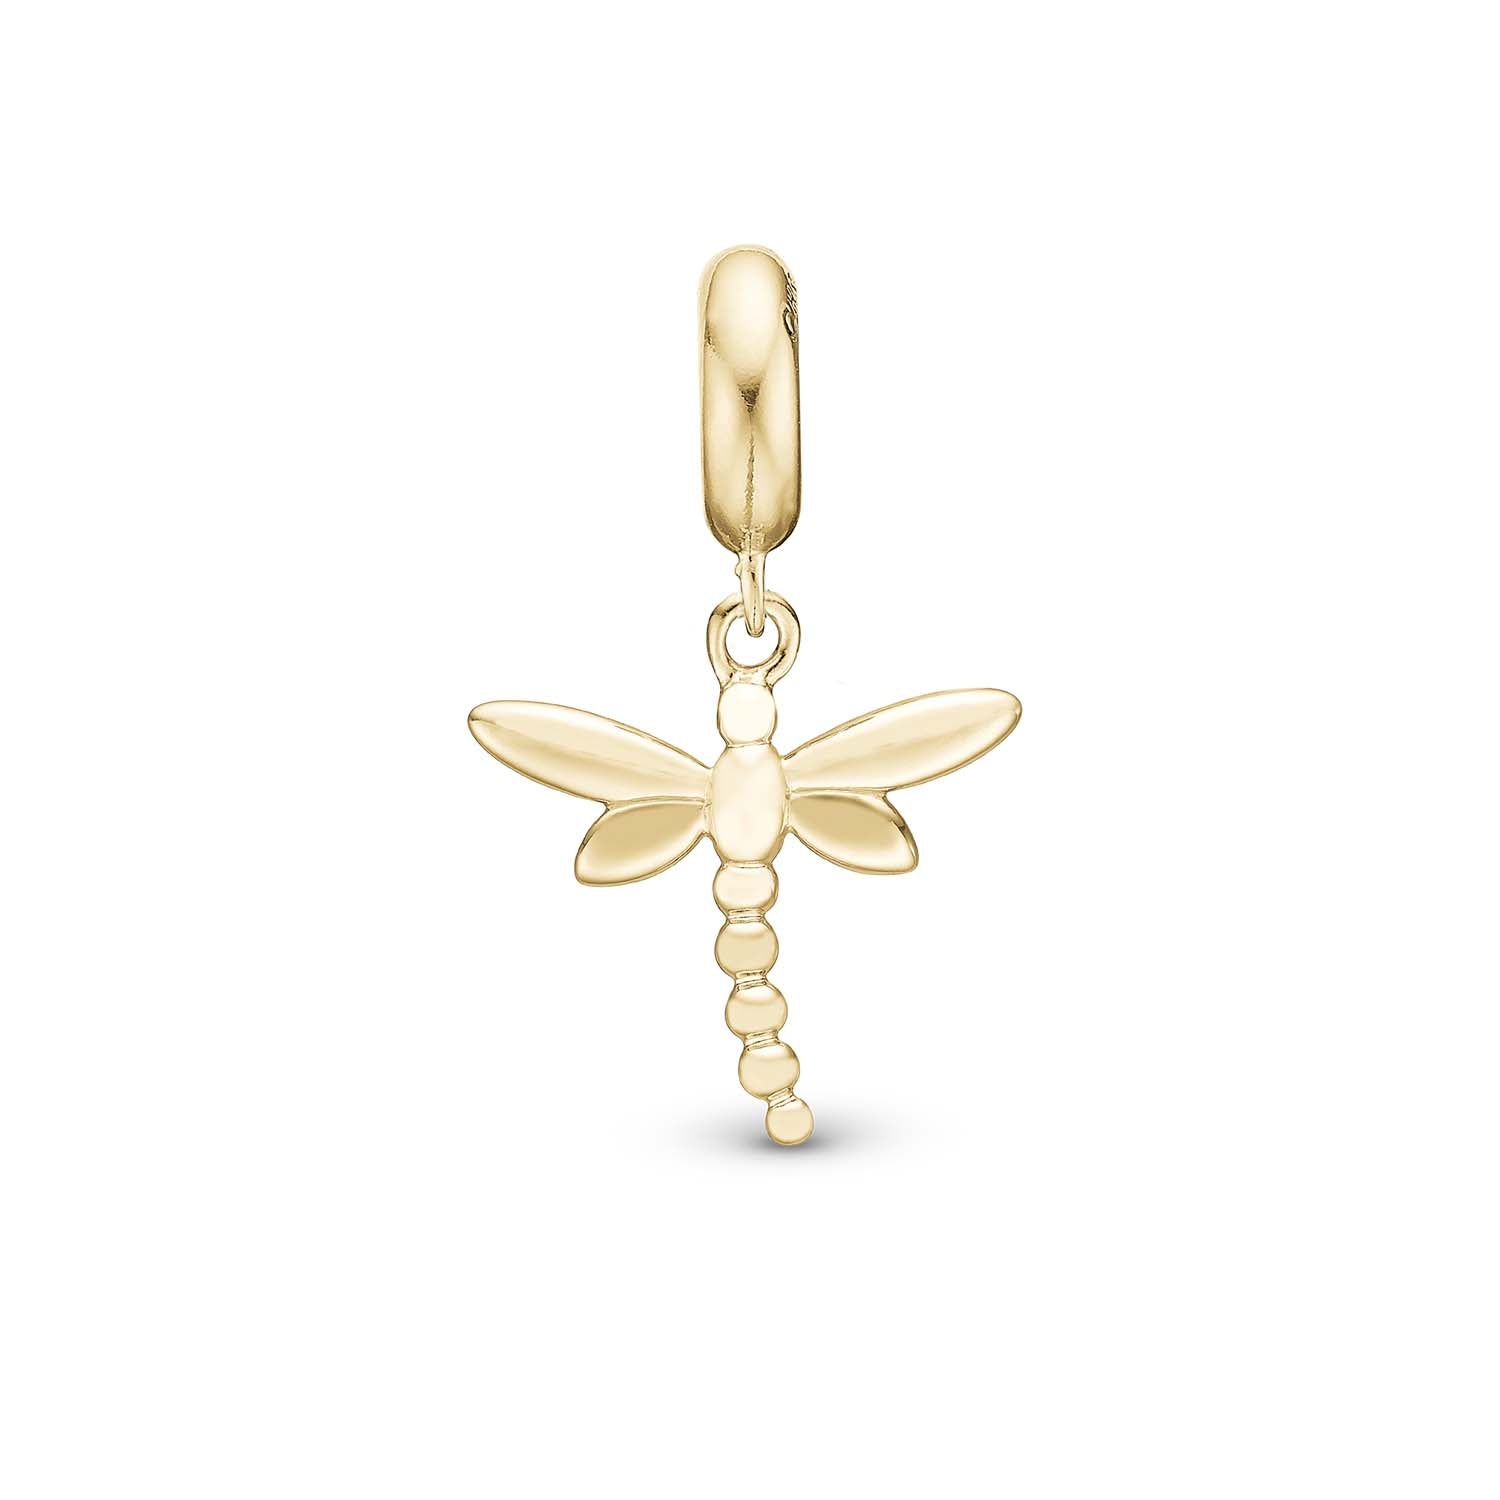 Billede af Christina Design London Jewelry & Watches - Dragonfly charm forgyldt sterlingsølv 4 mm